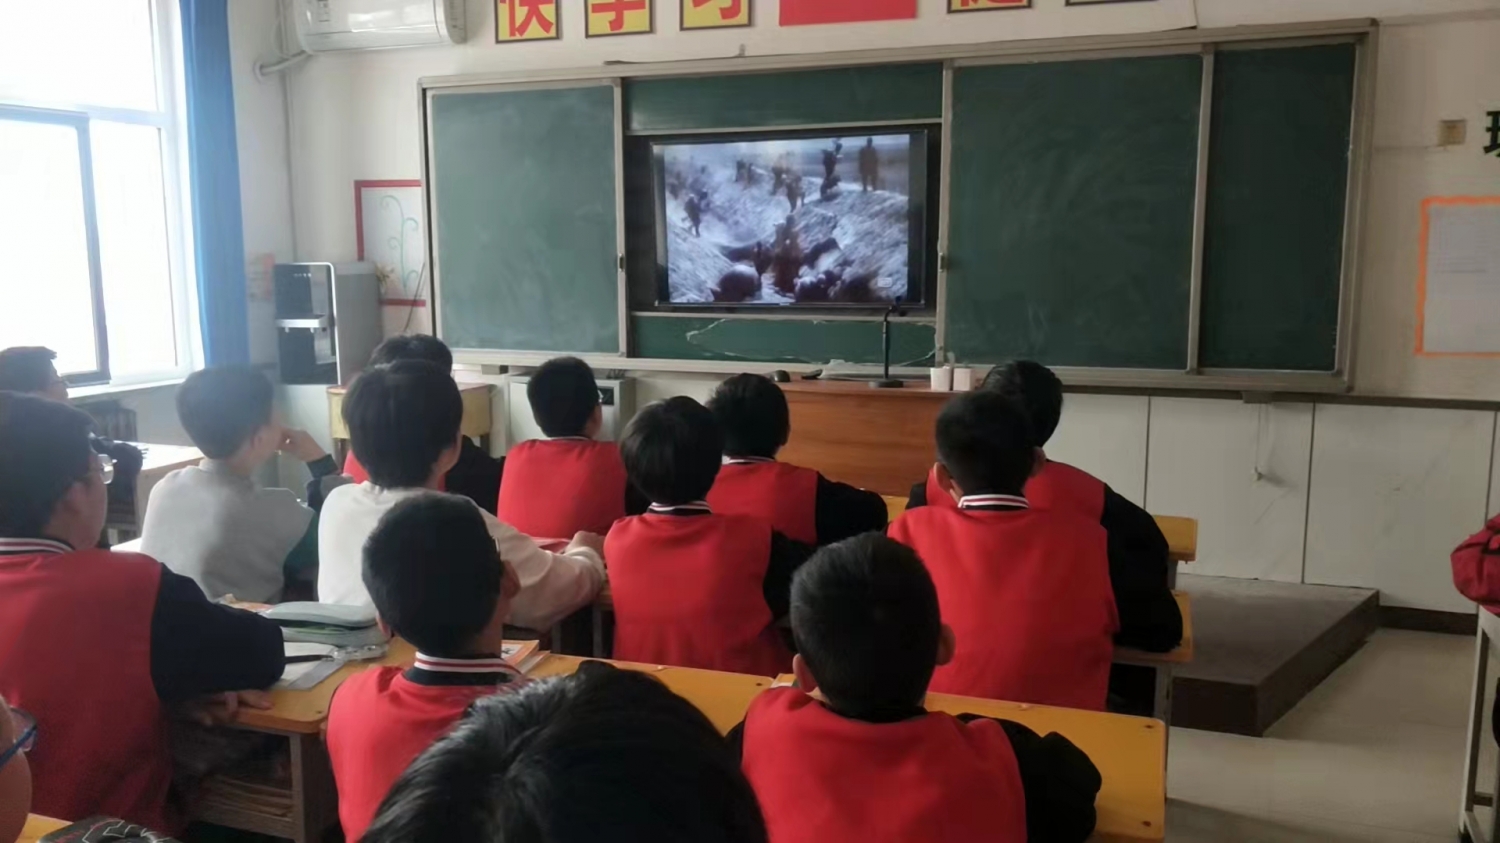 为缓解孩子们的情绪，学校安排利用大课间让孩子们看电影！